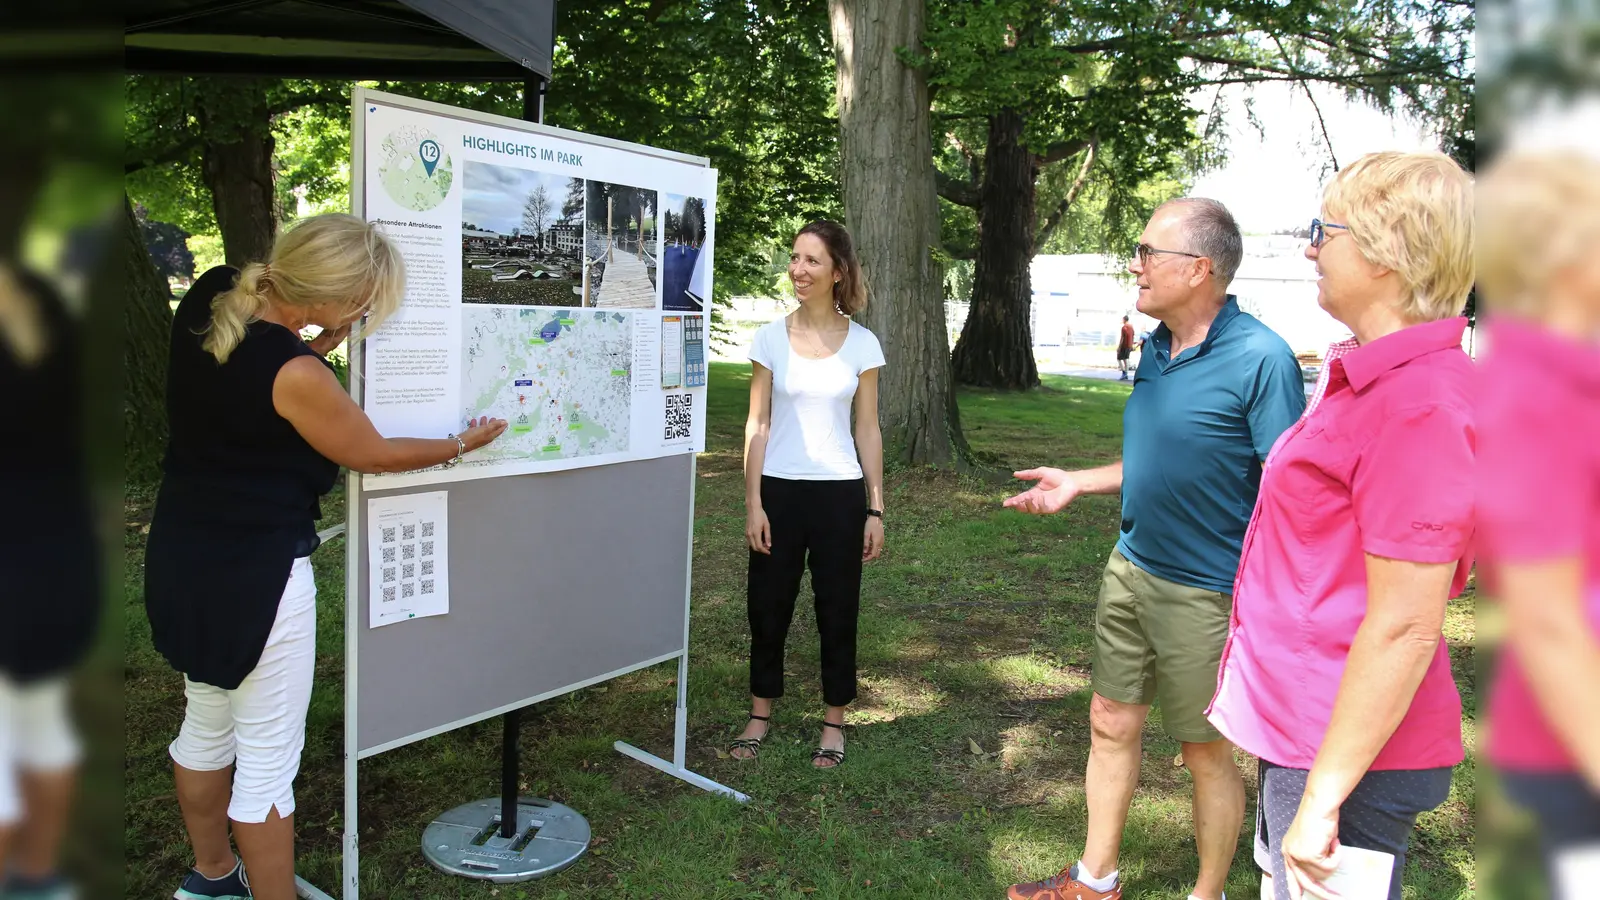 Die Stadt Bad Nenndorf bereitet die Landesgartenschau unter Beteiligung der Bürgerschaft vor. Der Landkreis fasst Förderungen im Umfang von einer Millionen Euro iins Auge.  (Foto: Borchers, Bastian)